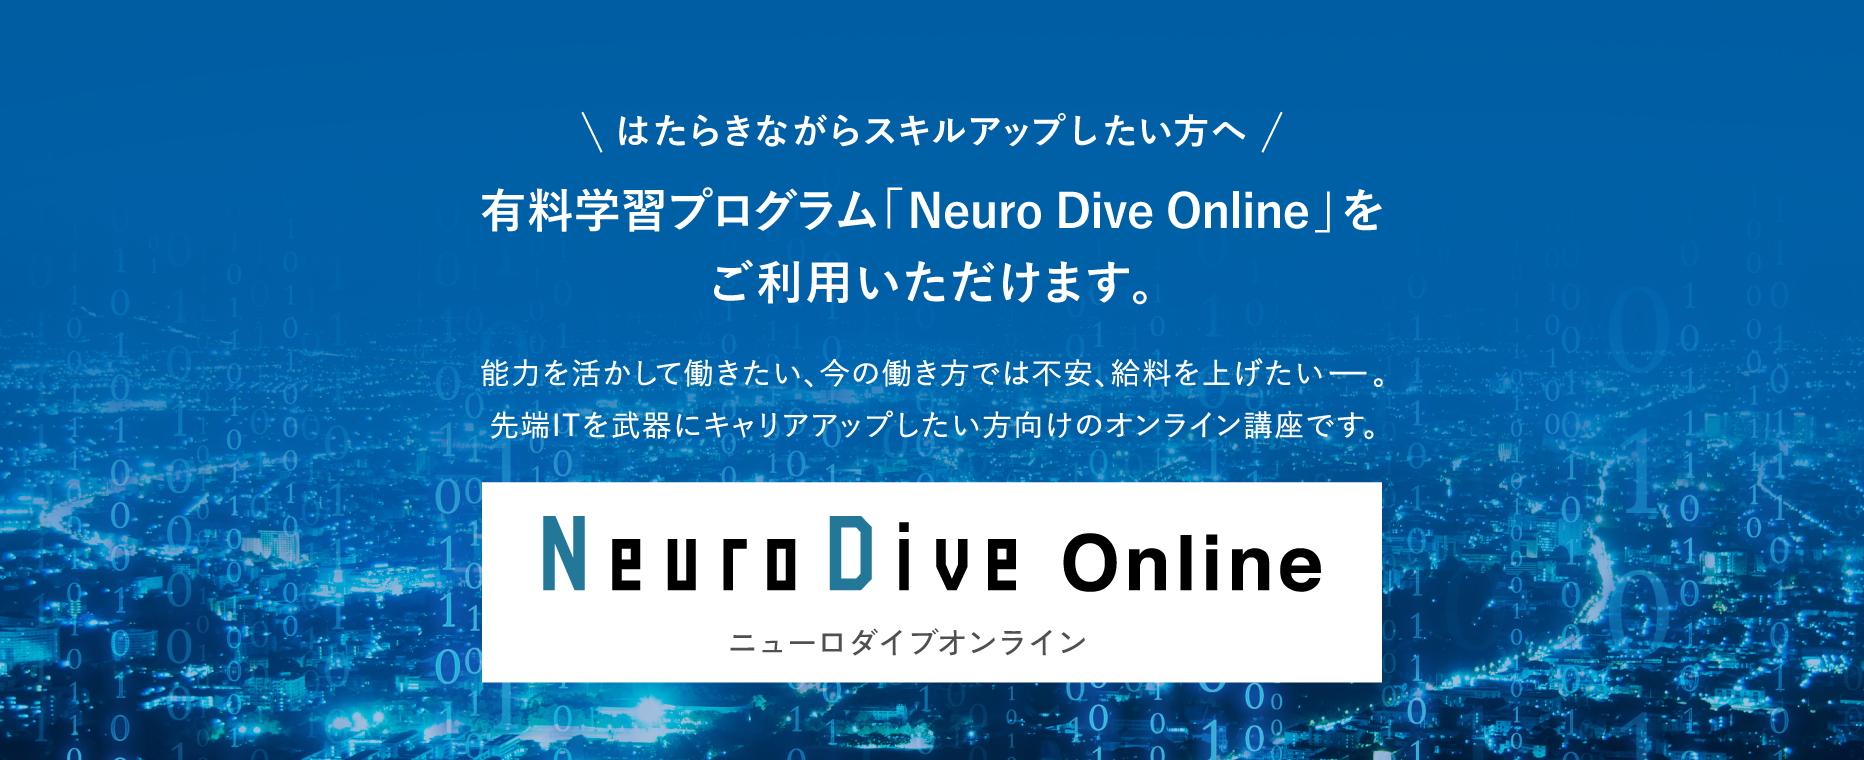 はたらきながらスキルアップしたい方へ 有料学習プログラム「Neuro Dive Online」をご利用いただけます。